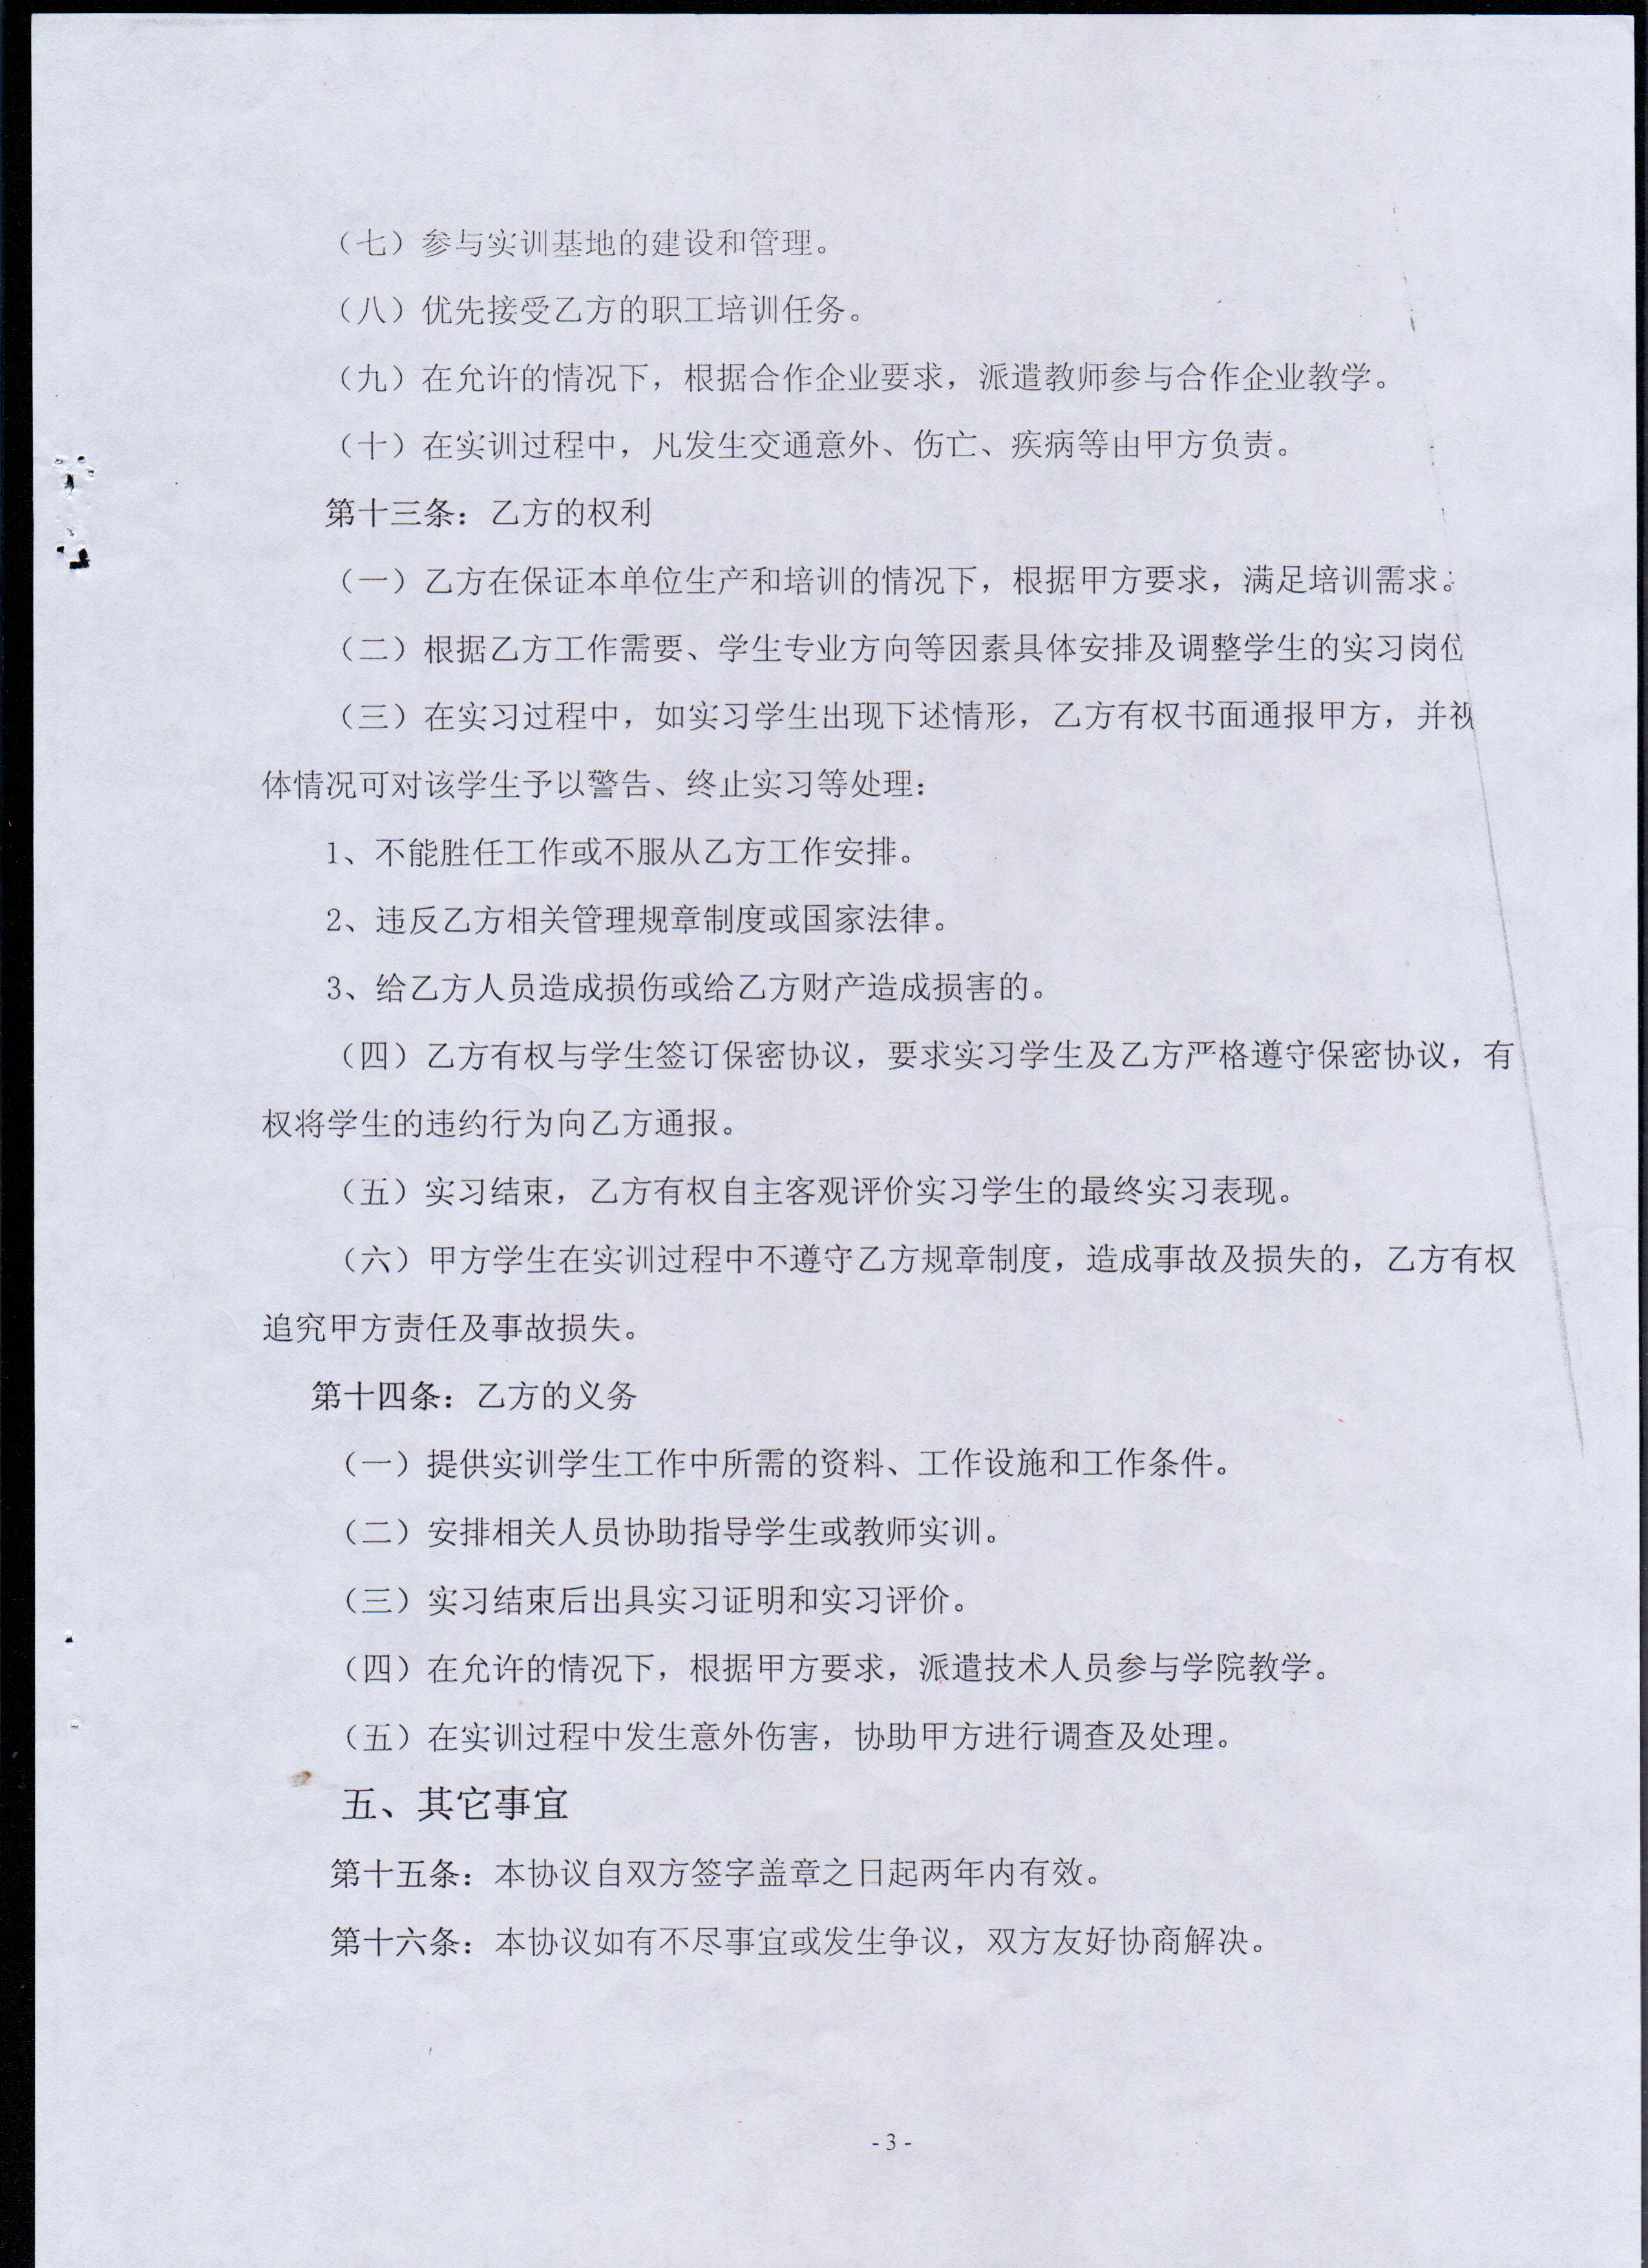 成都铁路局重庆机务段校企合作协议书